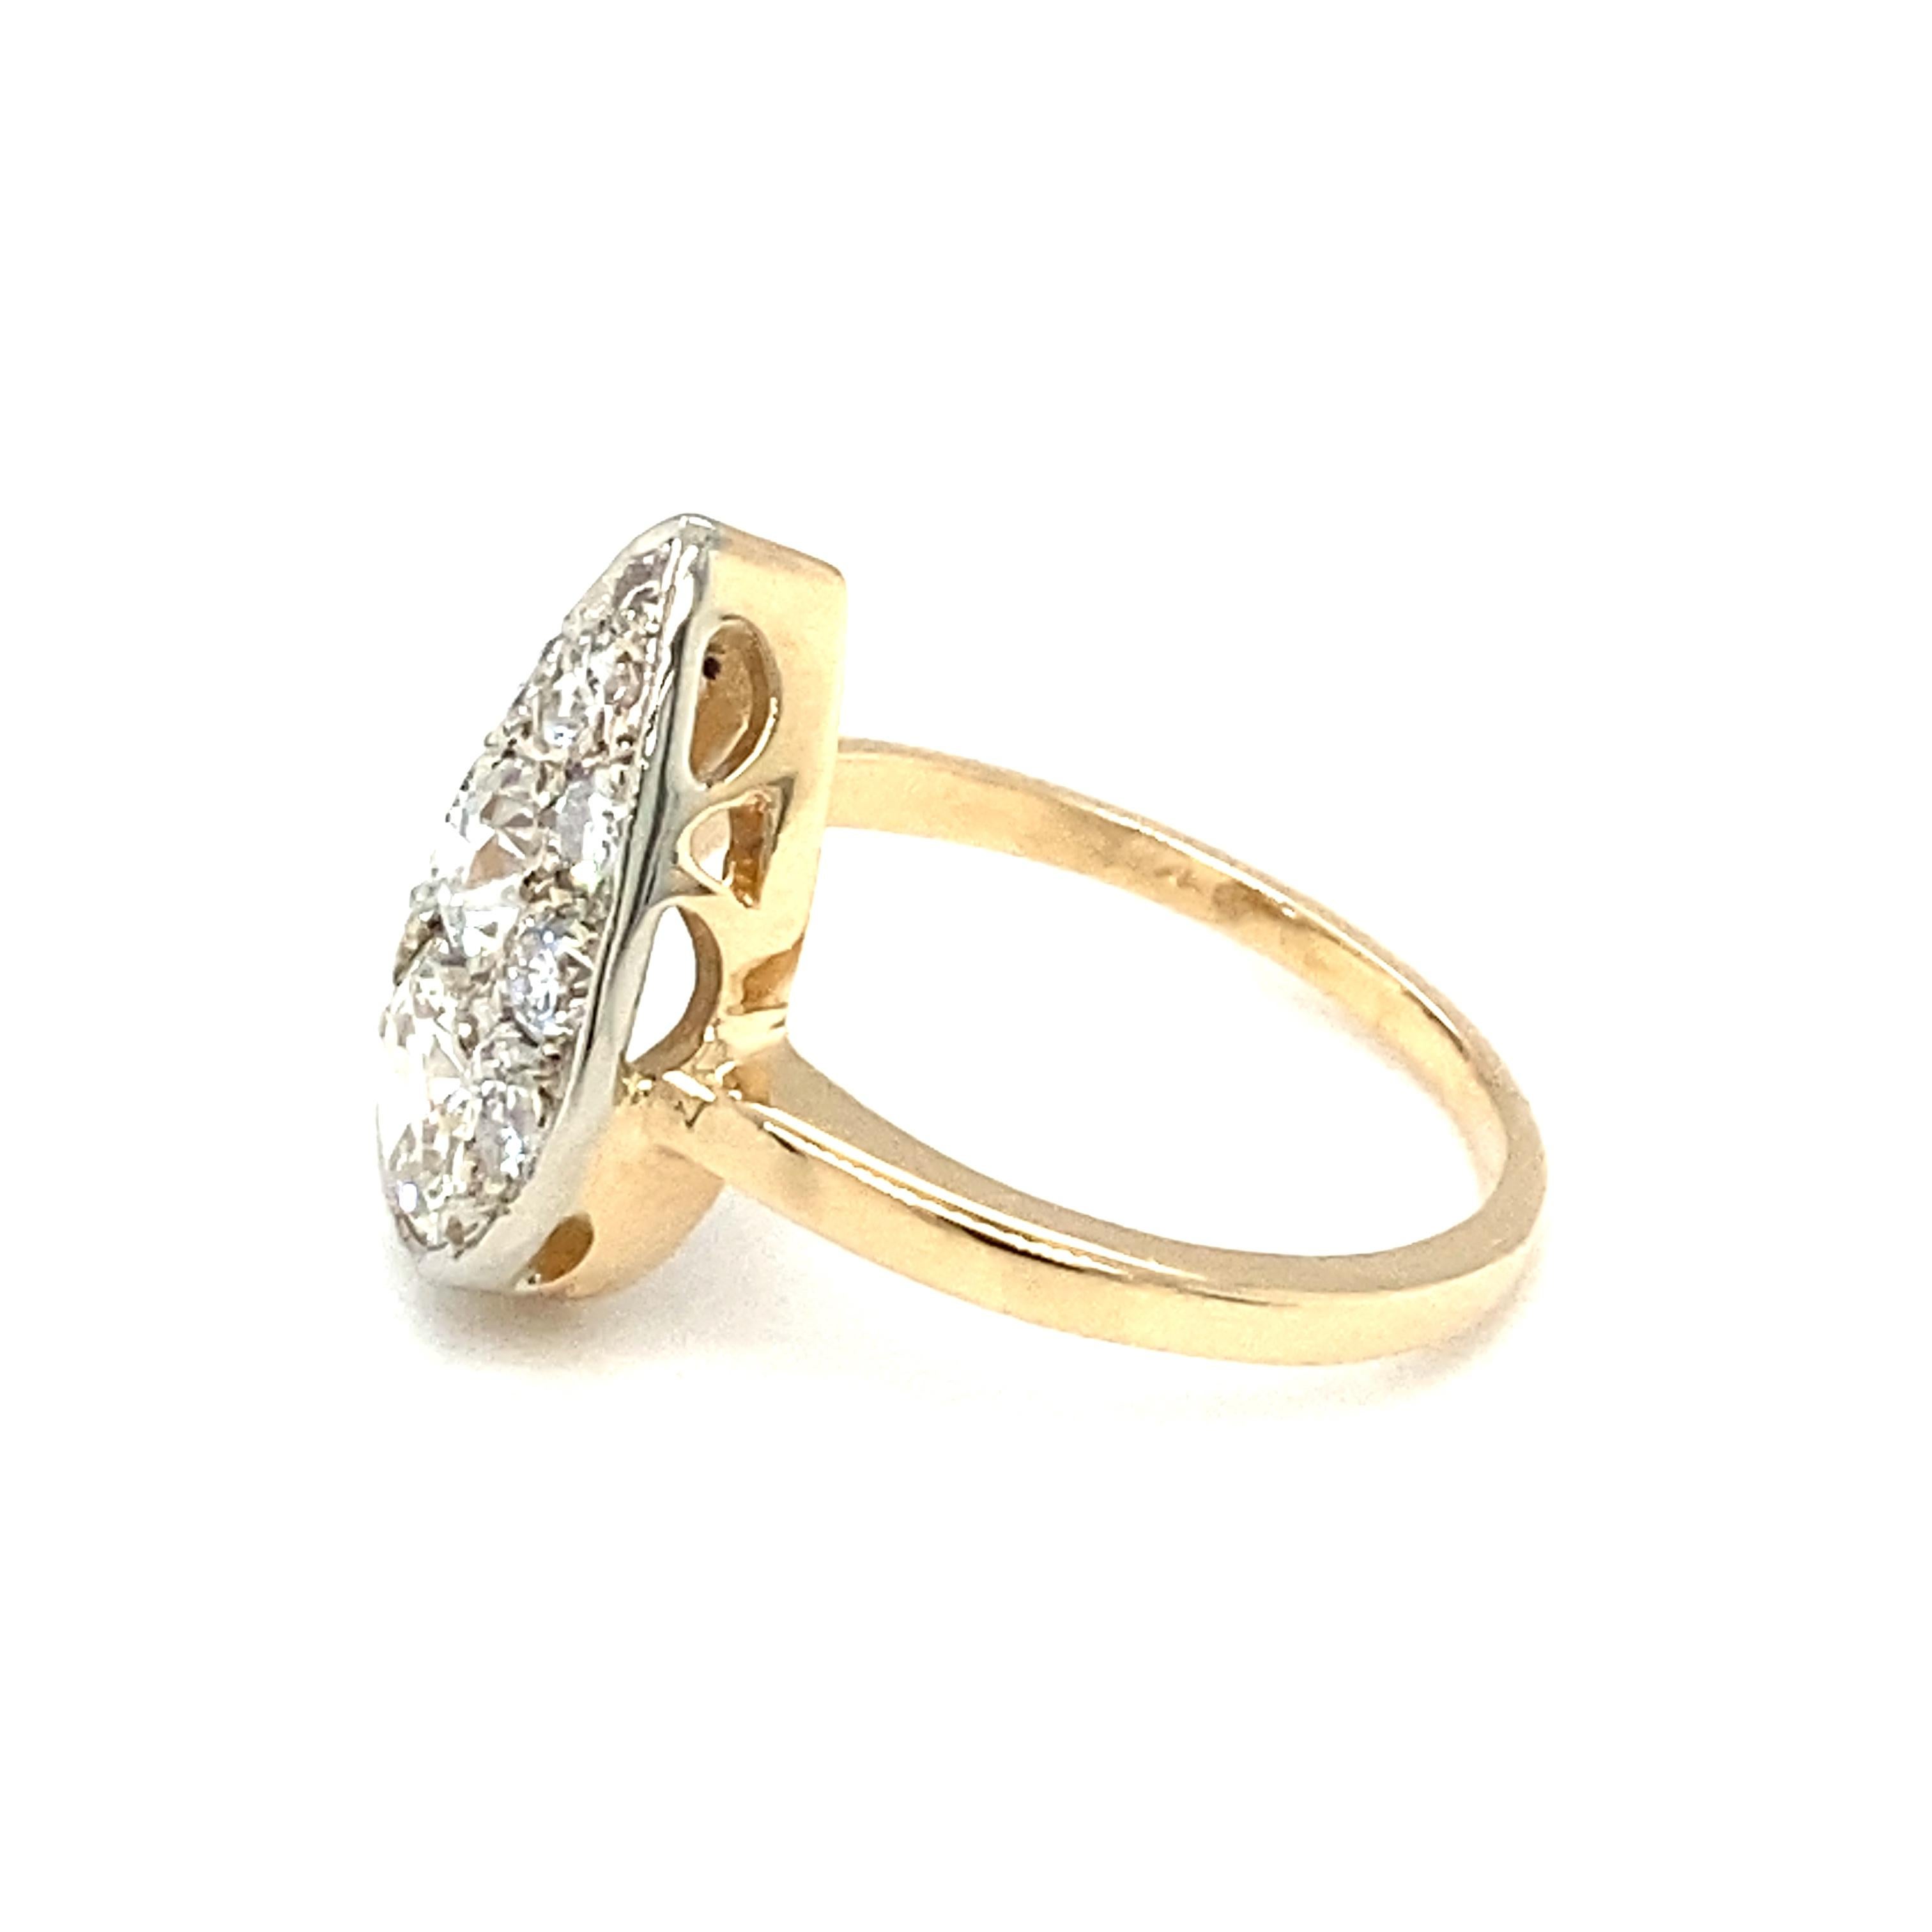 Women's or Men's Circa 1920s Art Deco 1.30 Carat Total Diamond Ring in 14 Karat Gold